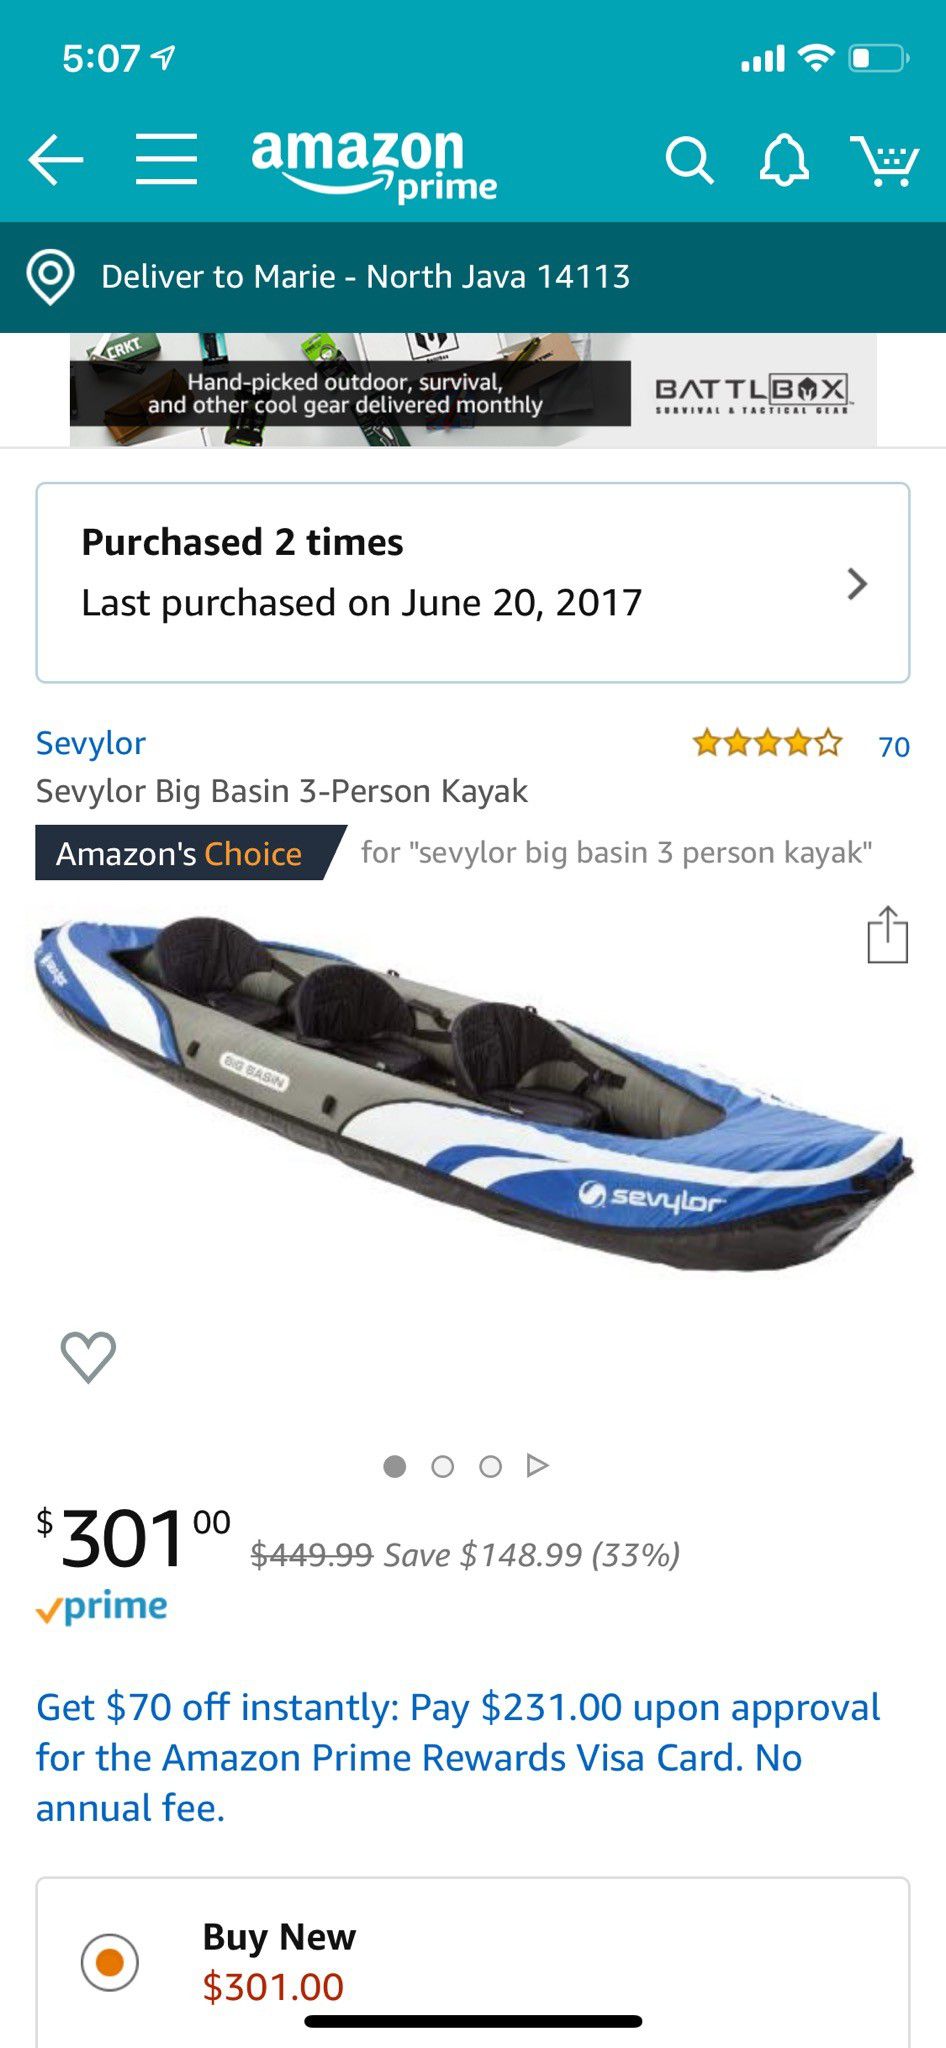 Savylor big basin 3 person kayak